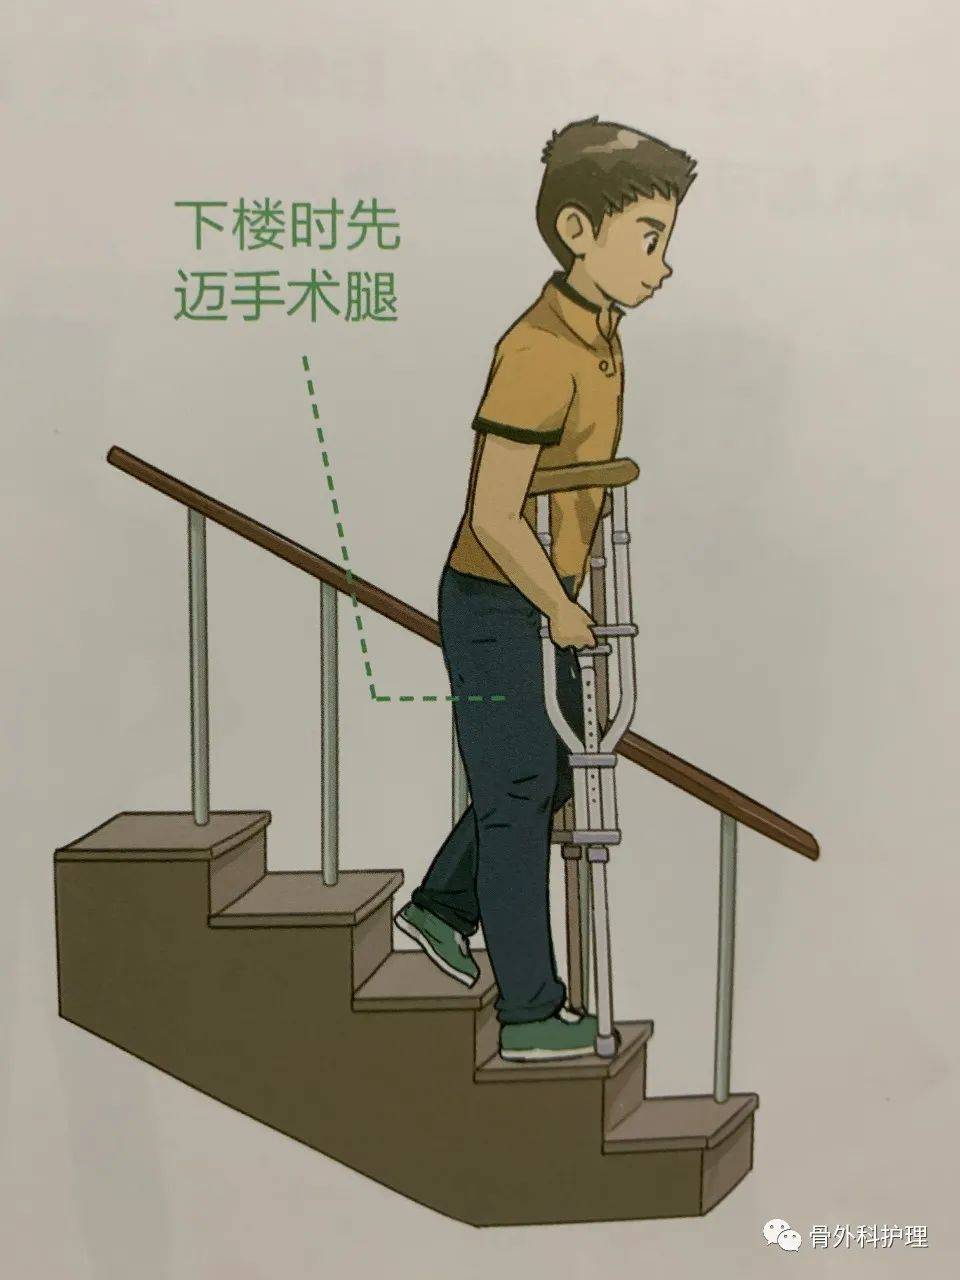 图解:髋关节置换术后上下楼的方法及行走的注意事项